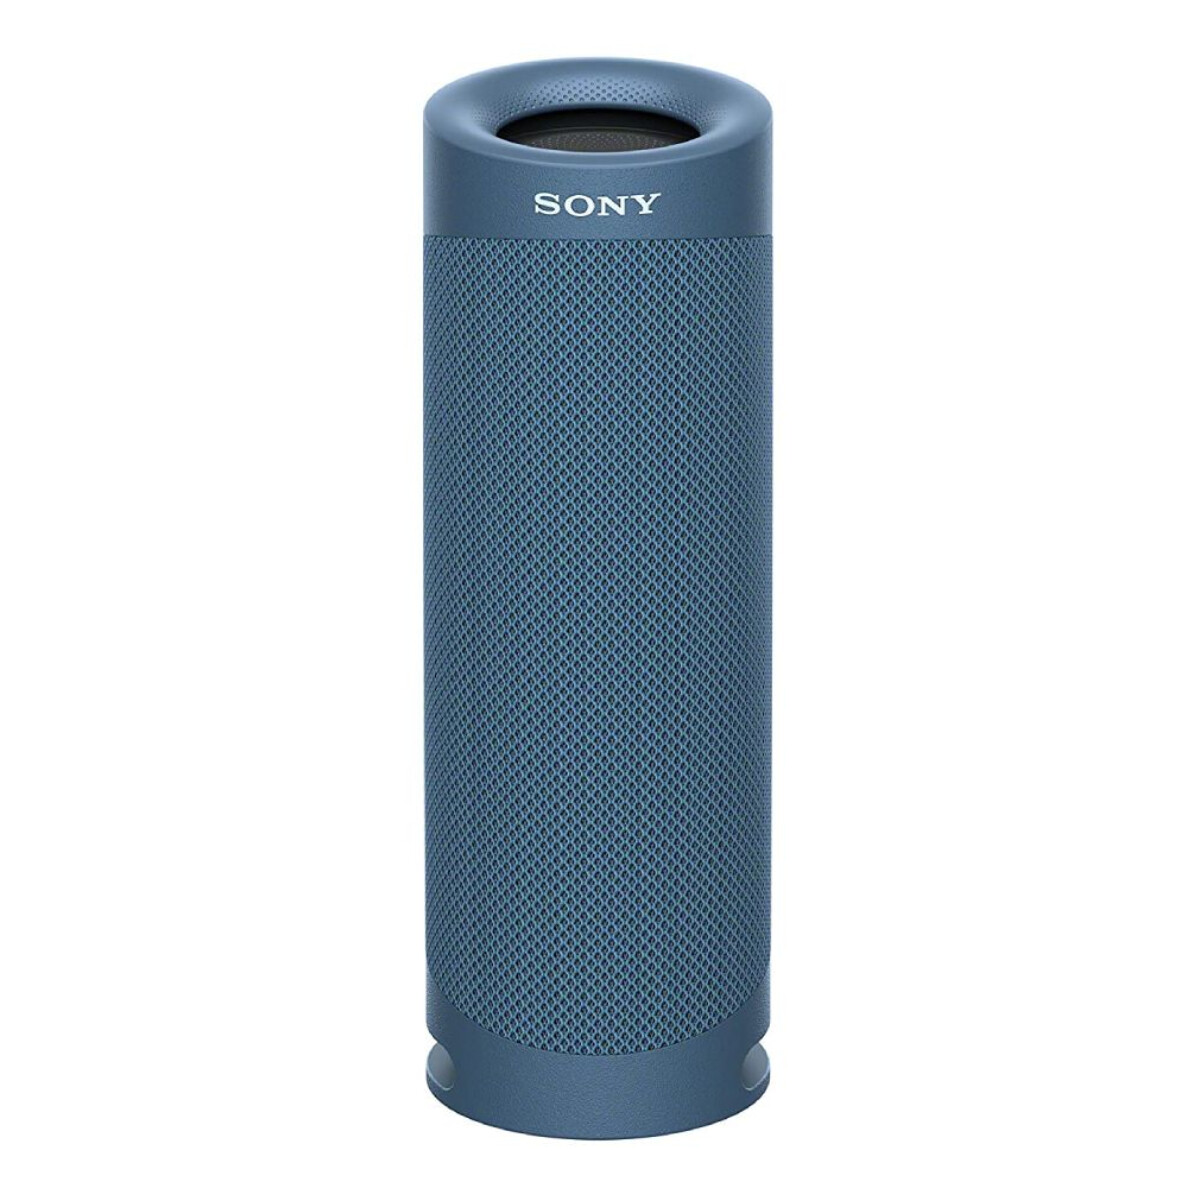 Parlante Sony SRS-XB23 - Azul 